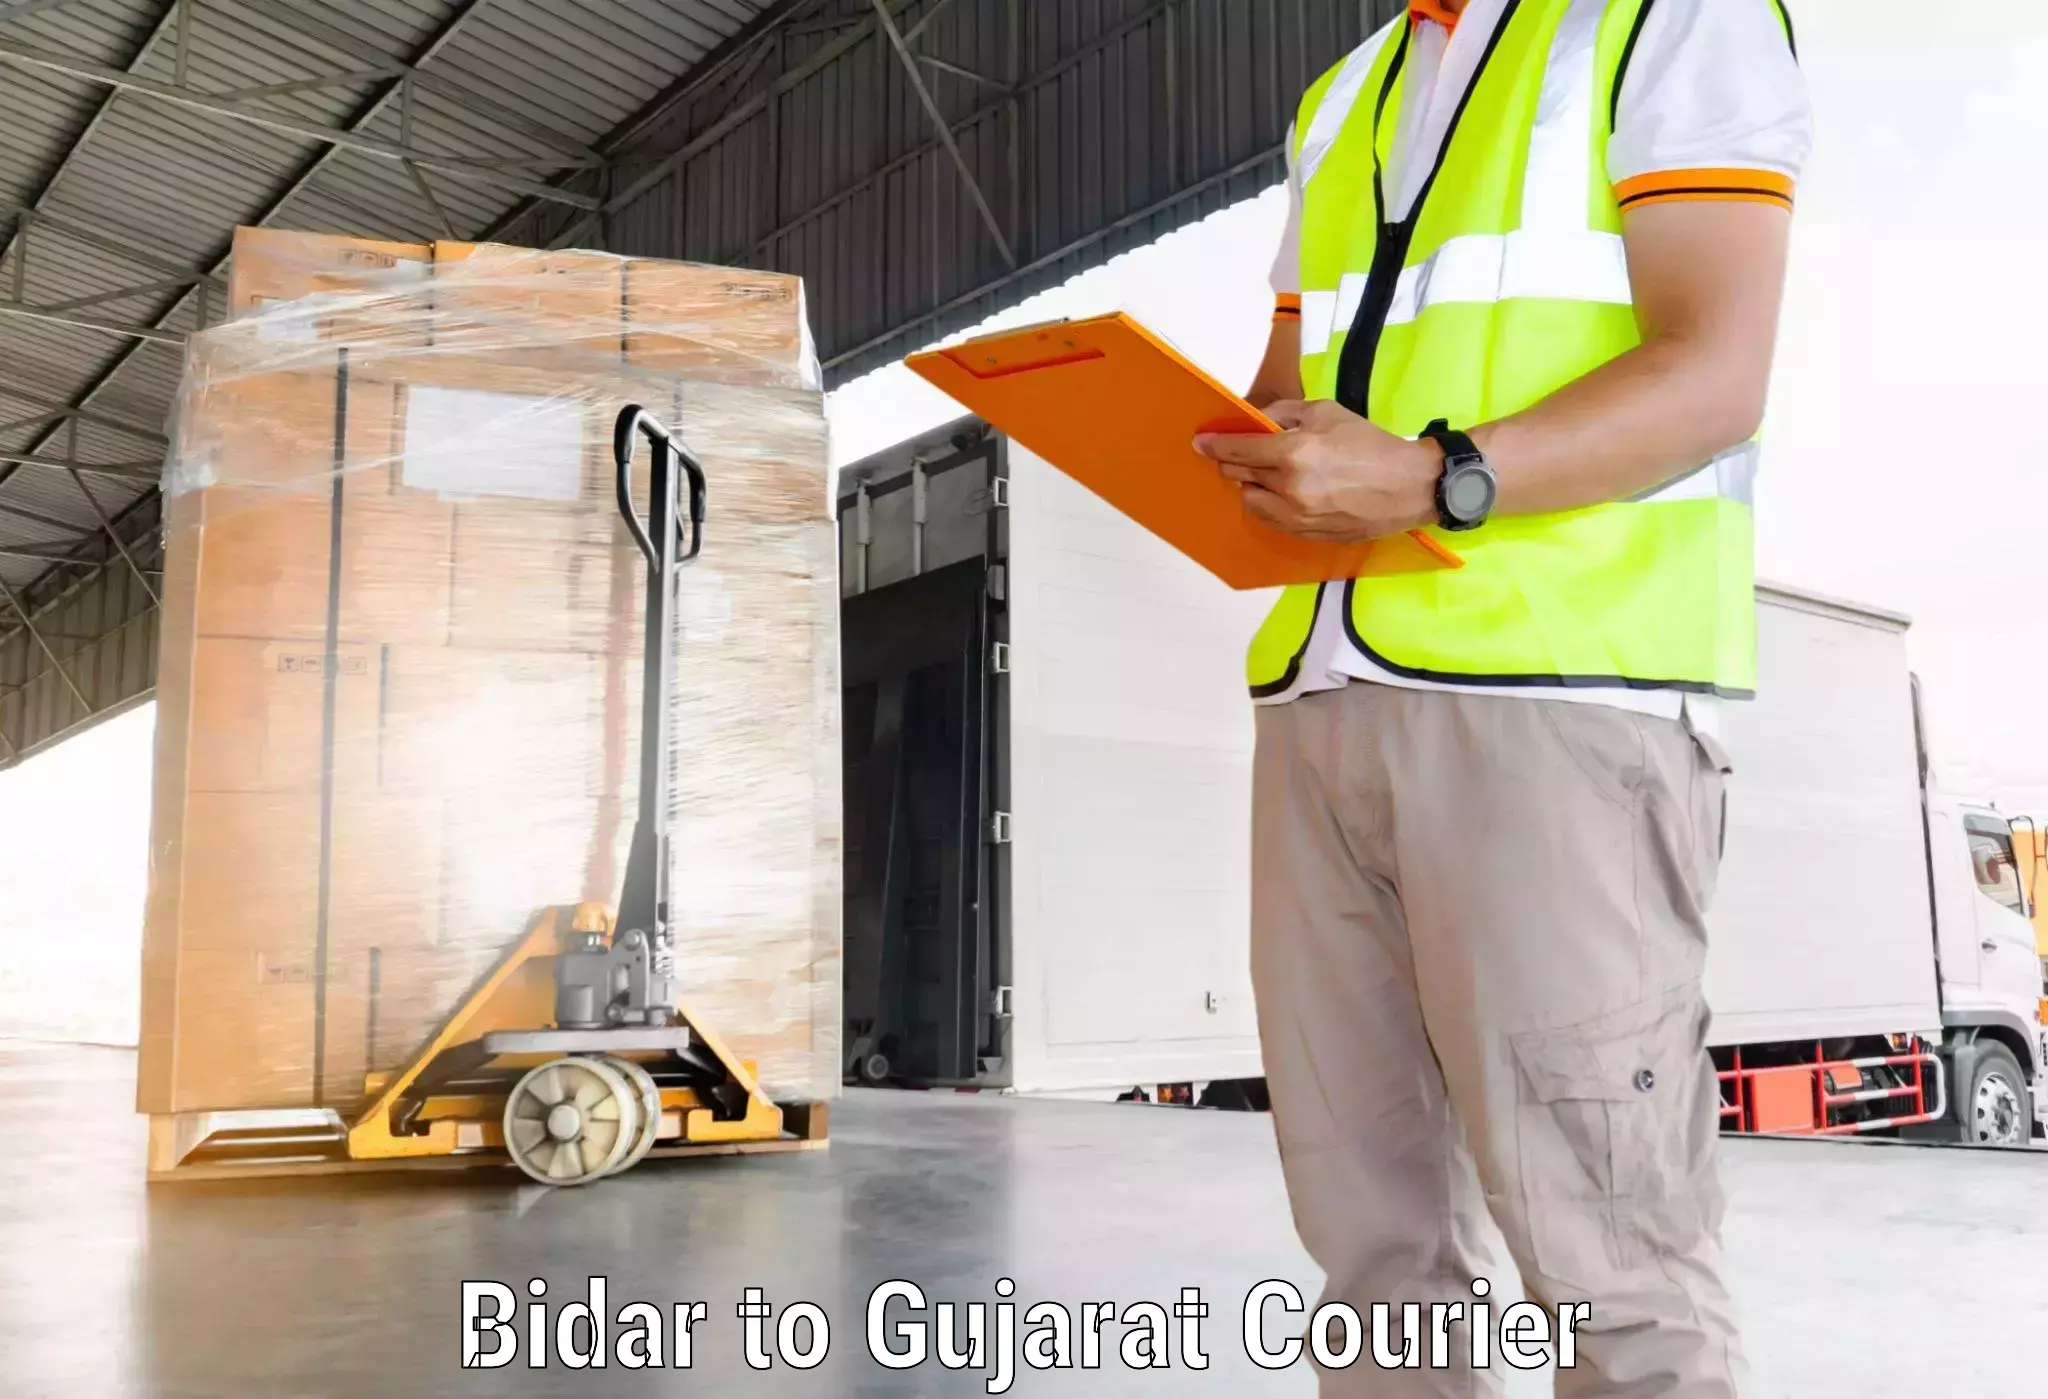 Global courier networks Bidar to Dahej